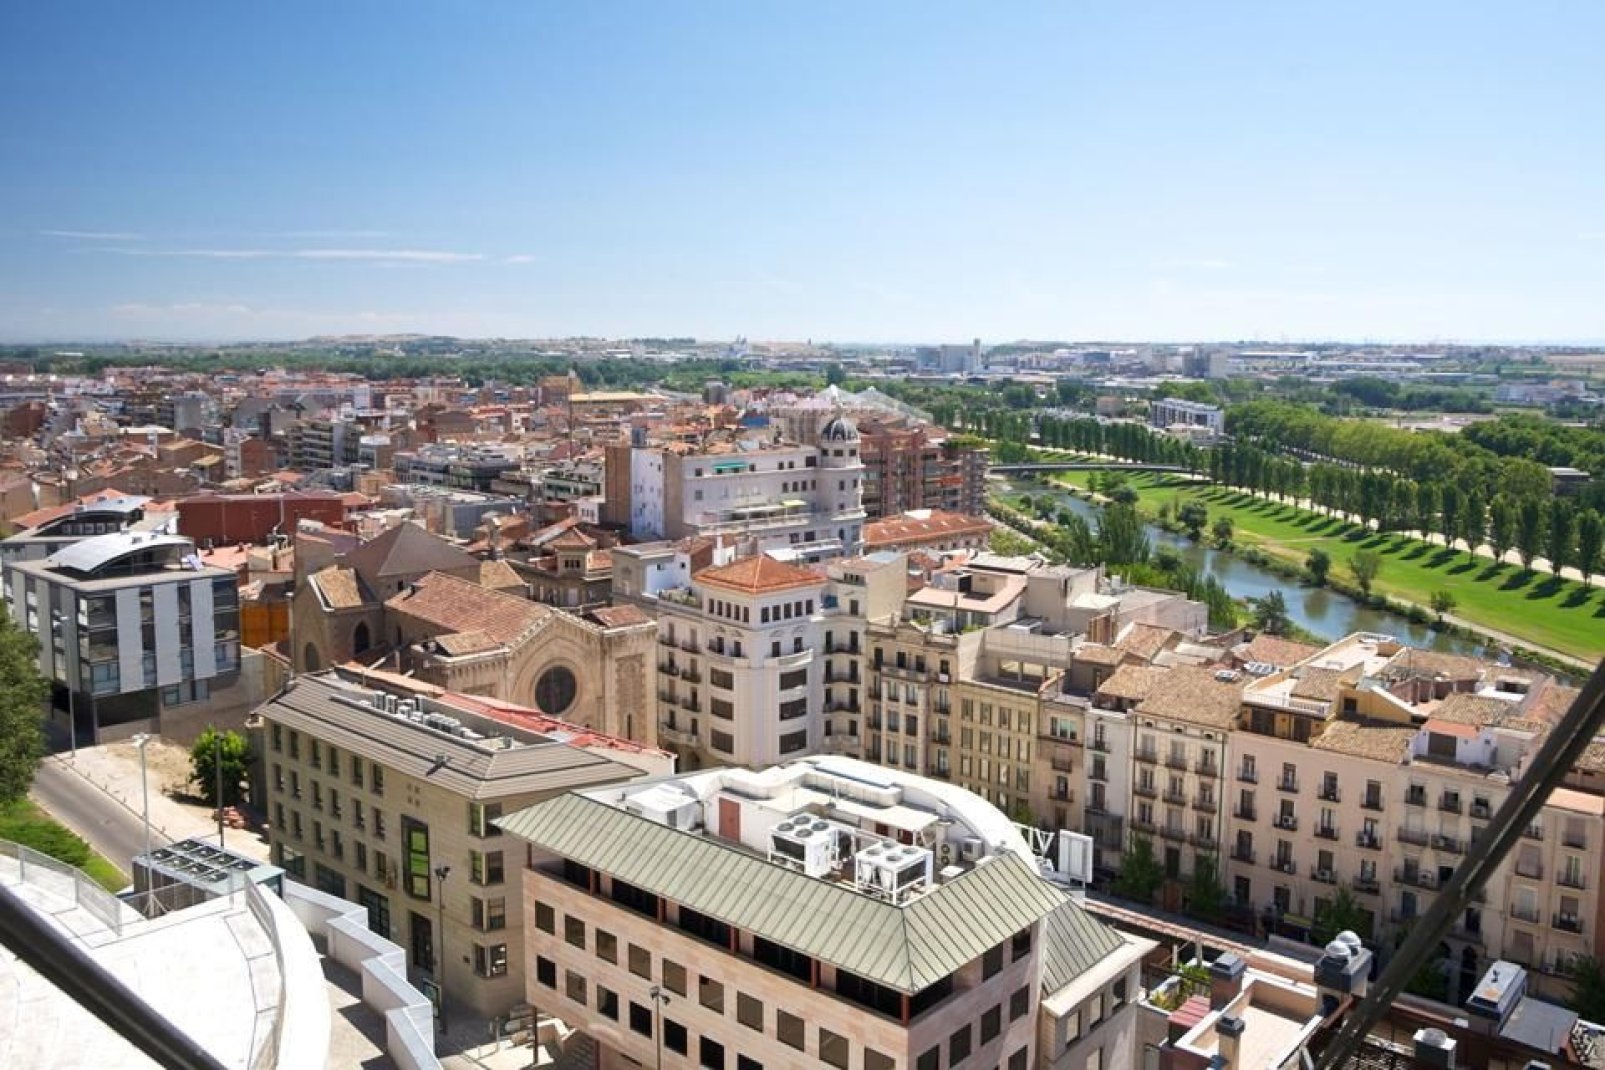 Die Einwohner der Stadt Lleida arbeiten hauptsächlich in den Bereichen Landwirtschaft, Textil- und Chemieindustrie.